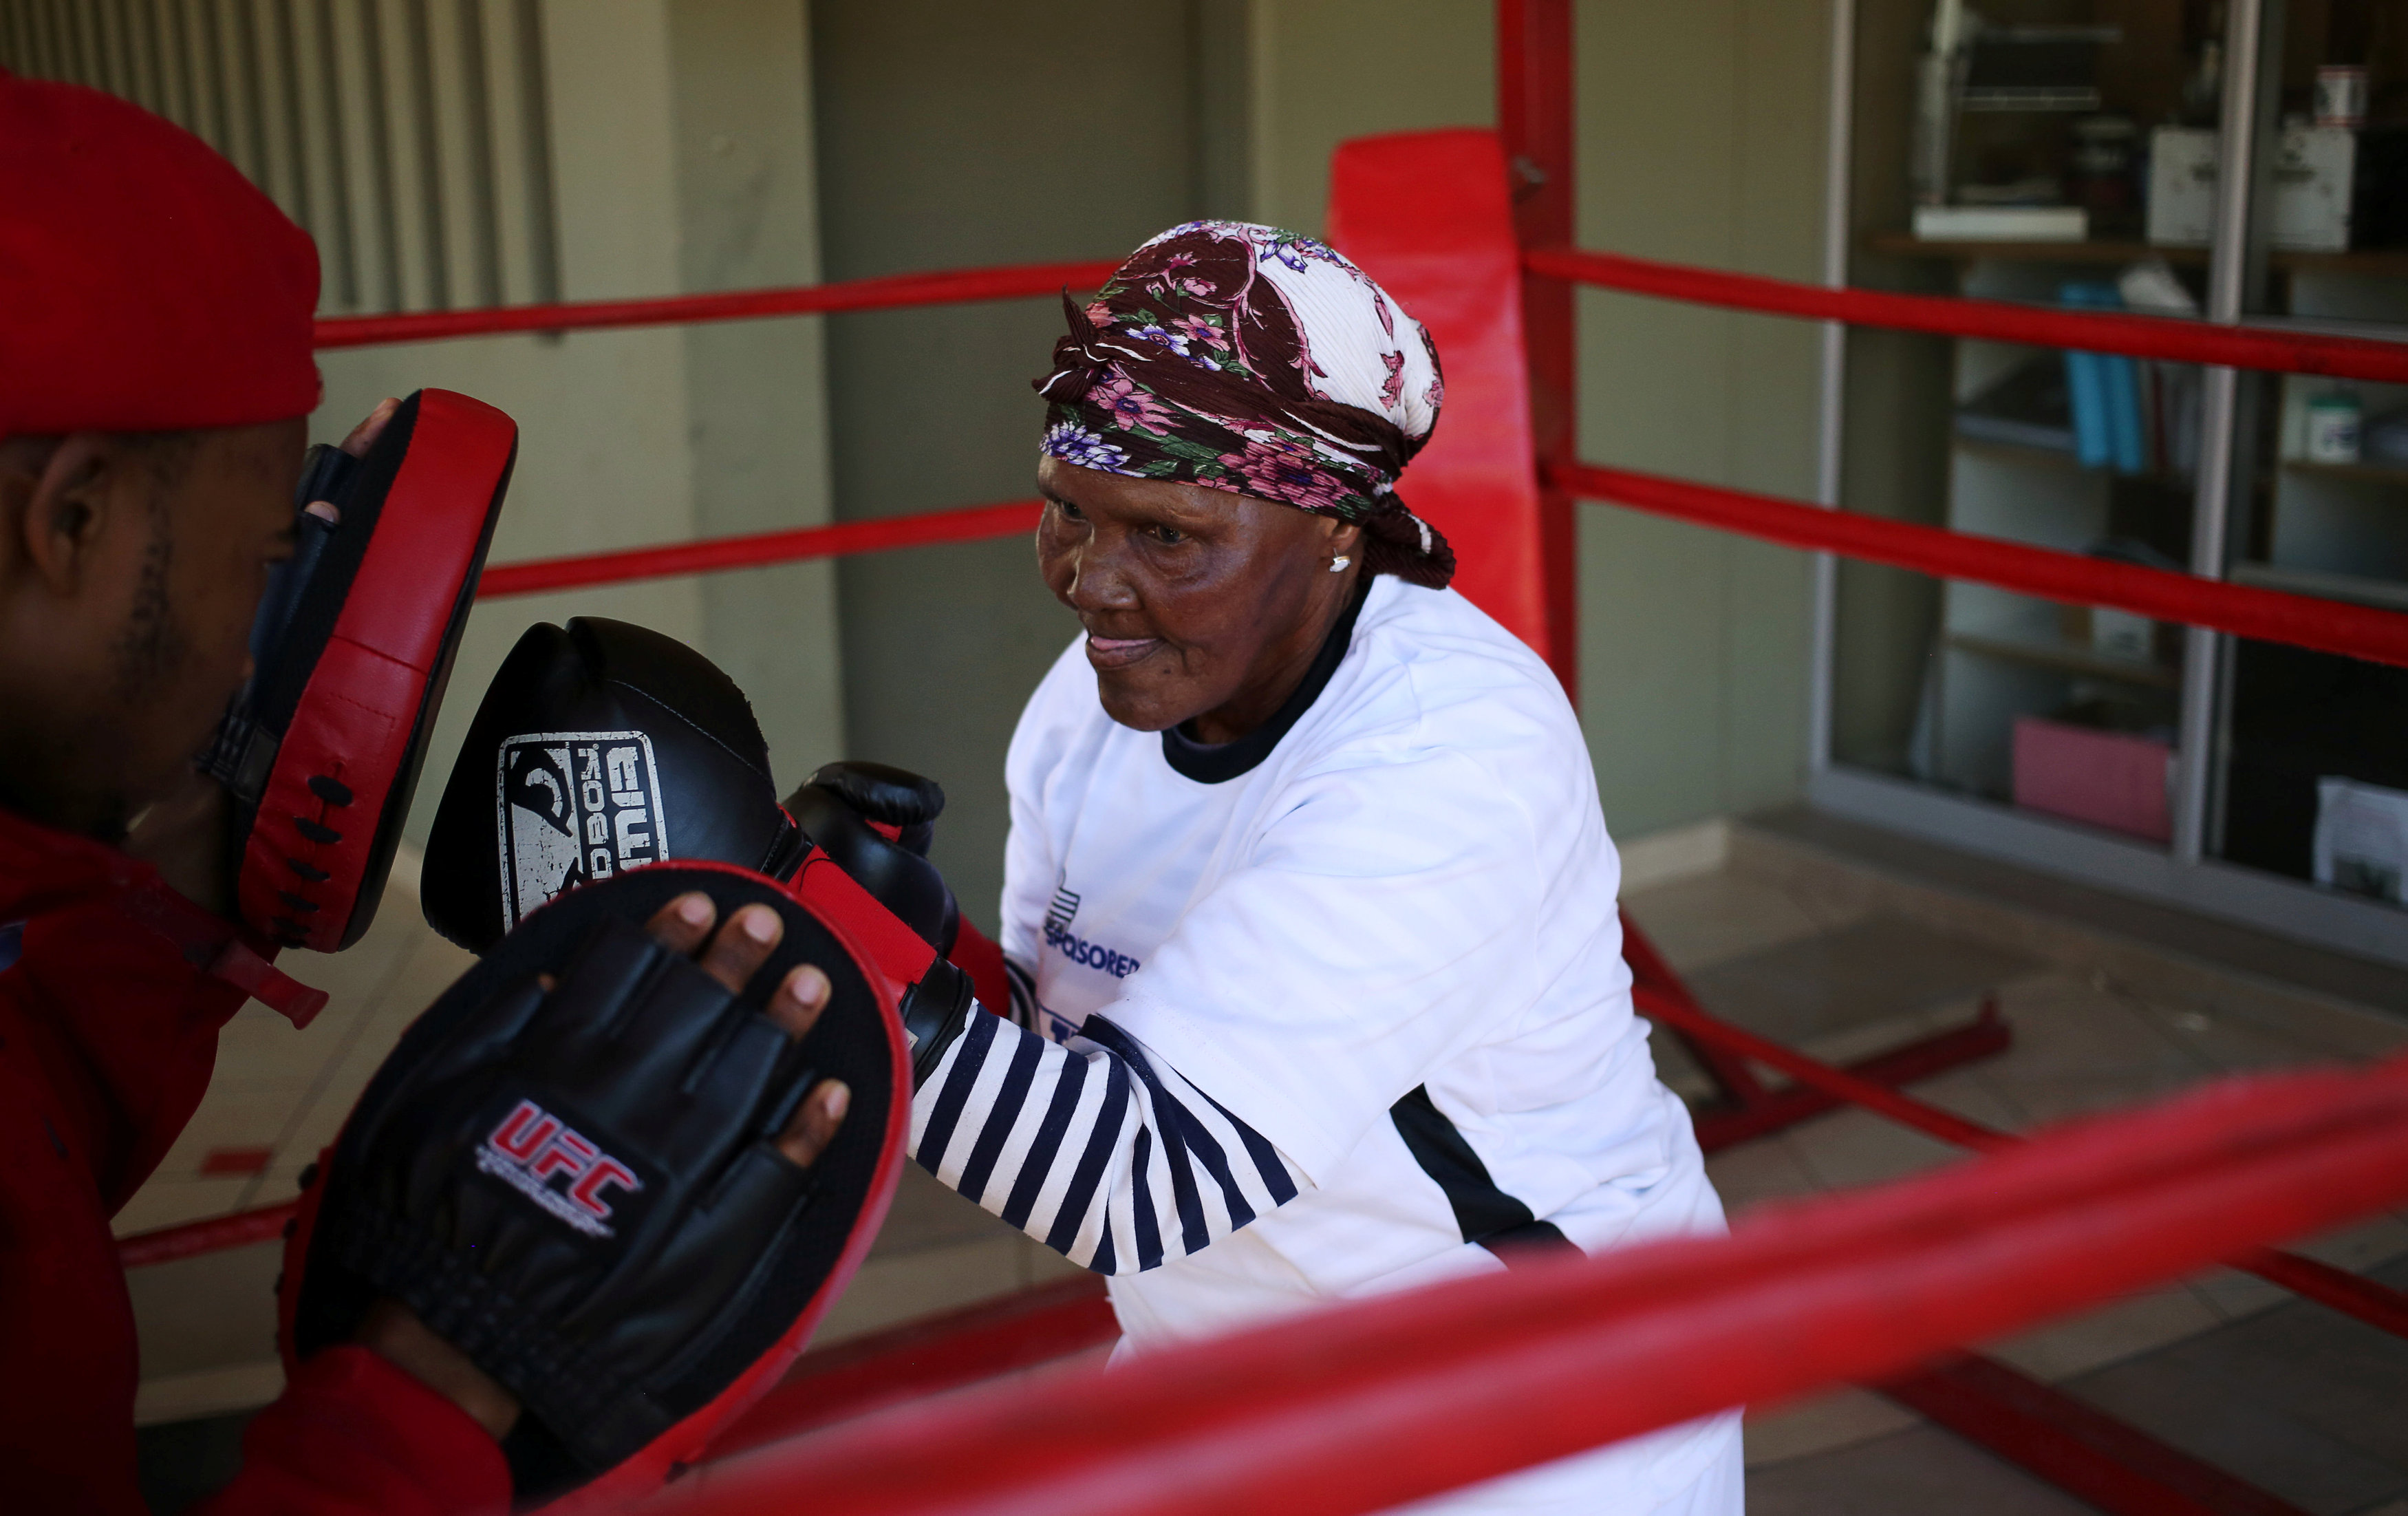 مدرب يجهز ملاكمة للمشاركة فى مباريات محاربة الشيخوخة